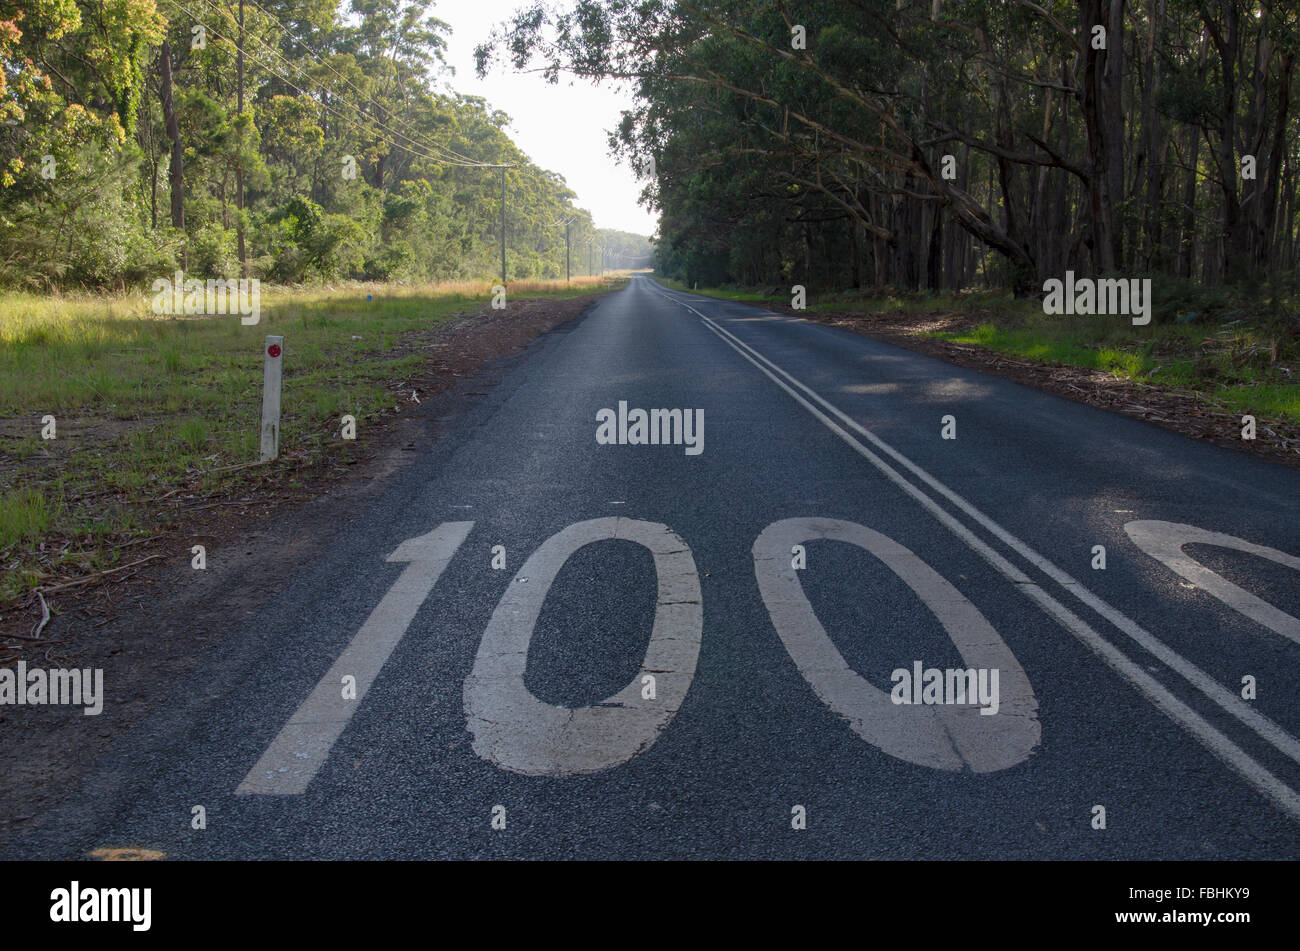 Eine lange, gerade Straße von 100kmph mit dichtem Busch und hohen Eukalyptusbäumen auf beiden Seiten in New South Wales, Australien Stockfoto